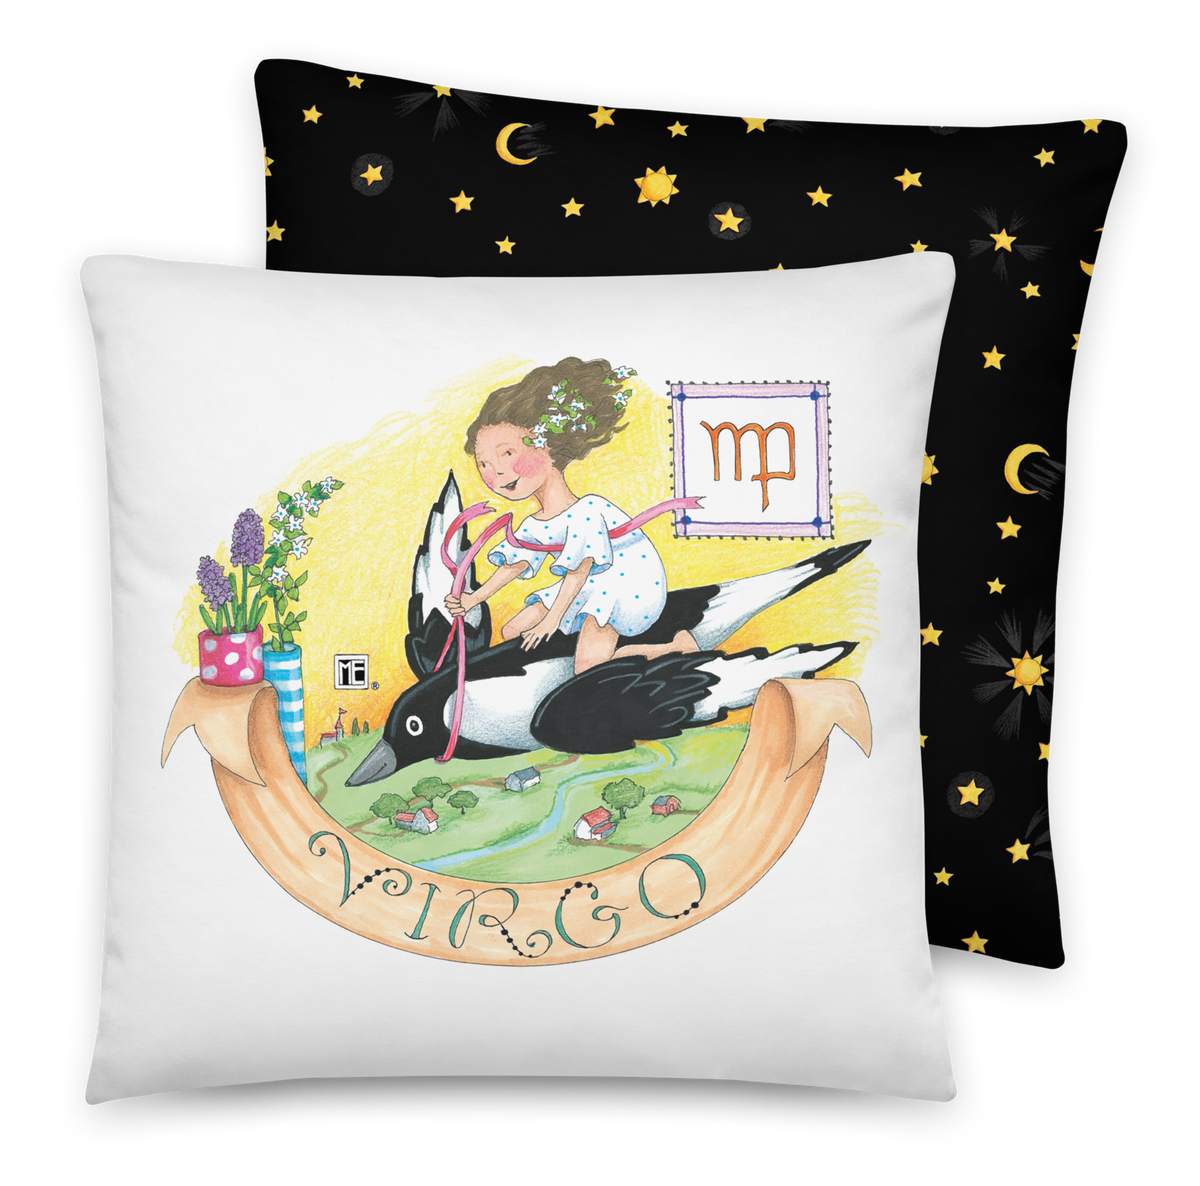 Virgo Pillow